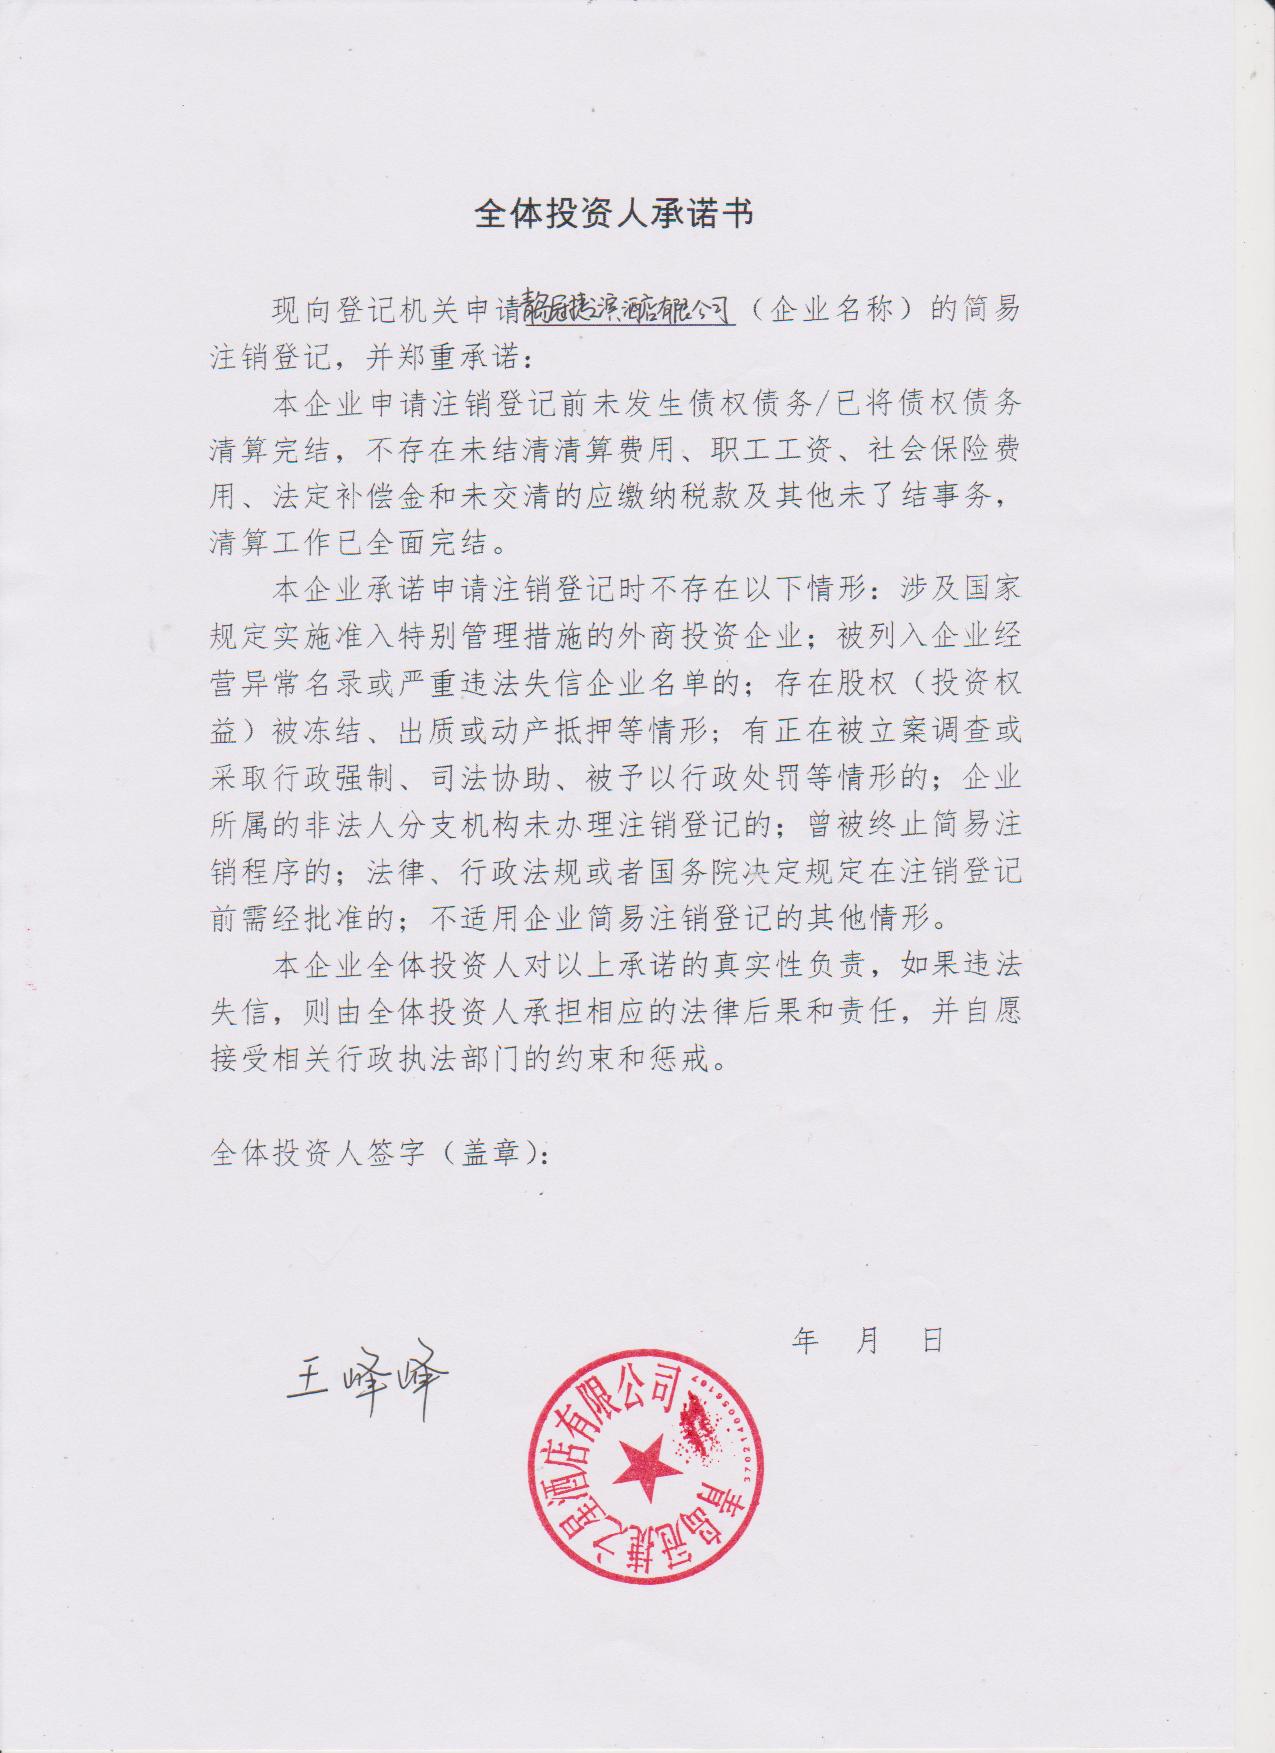 企业公告信息 企业名称 青岛冠捷之滨酒店有限公司 统一社会信用代码